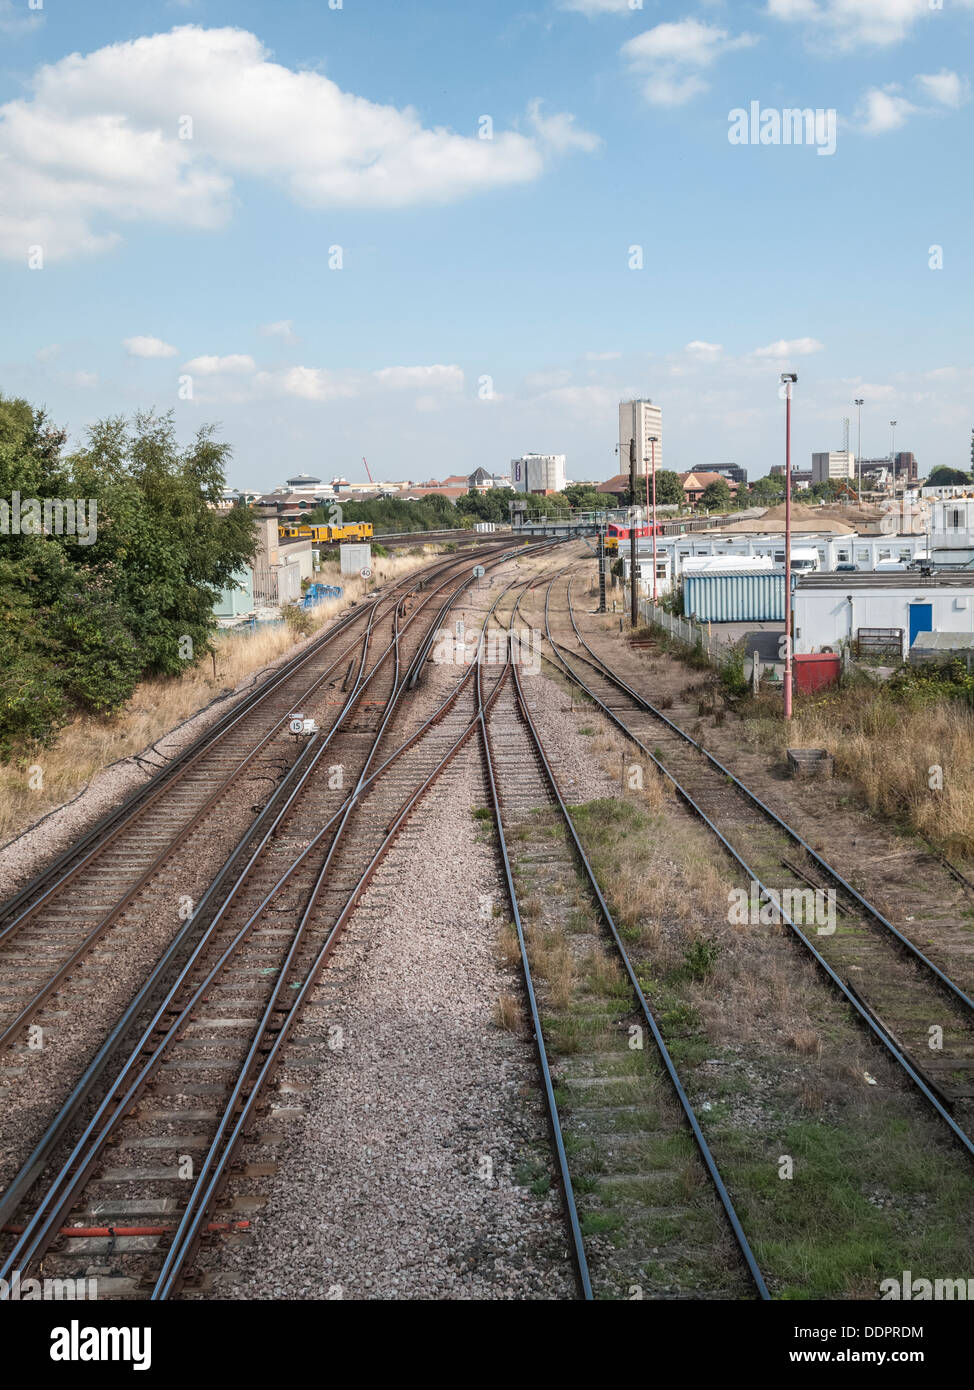 Railway tracks leading towards Woking, Surrey, England and Woking station Stock Photo